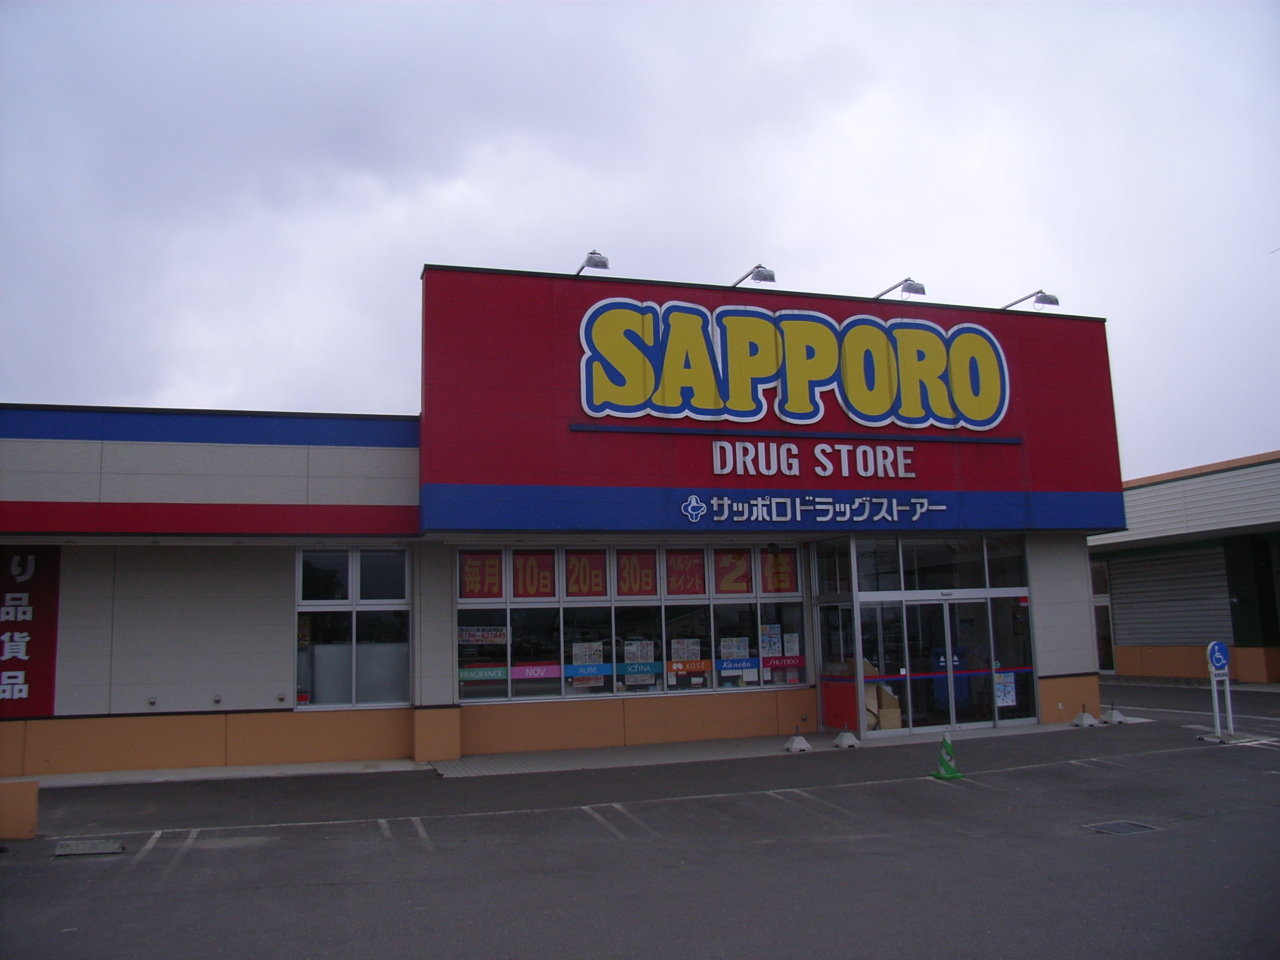 Dorakkusutoa. Sapporo drugstores Nanae shop 252m until (drugstore)